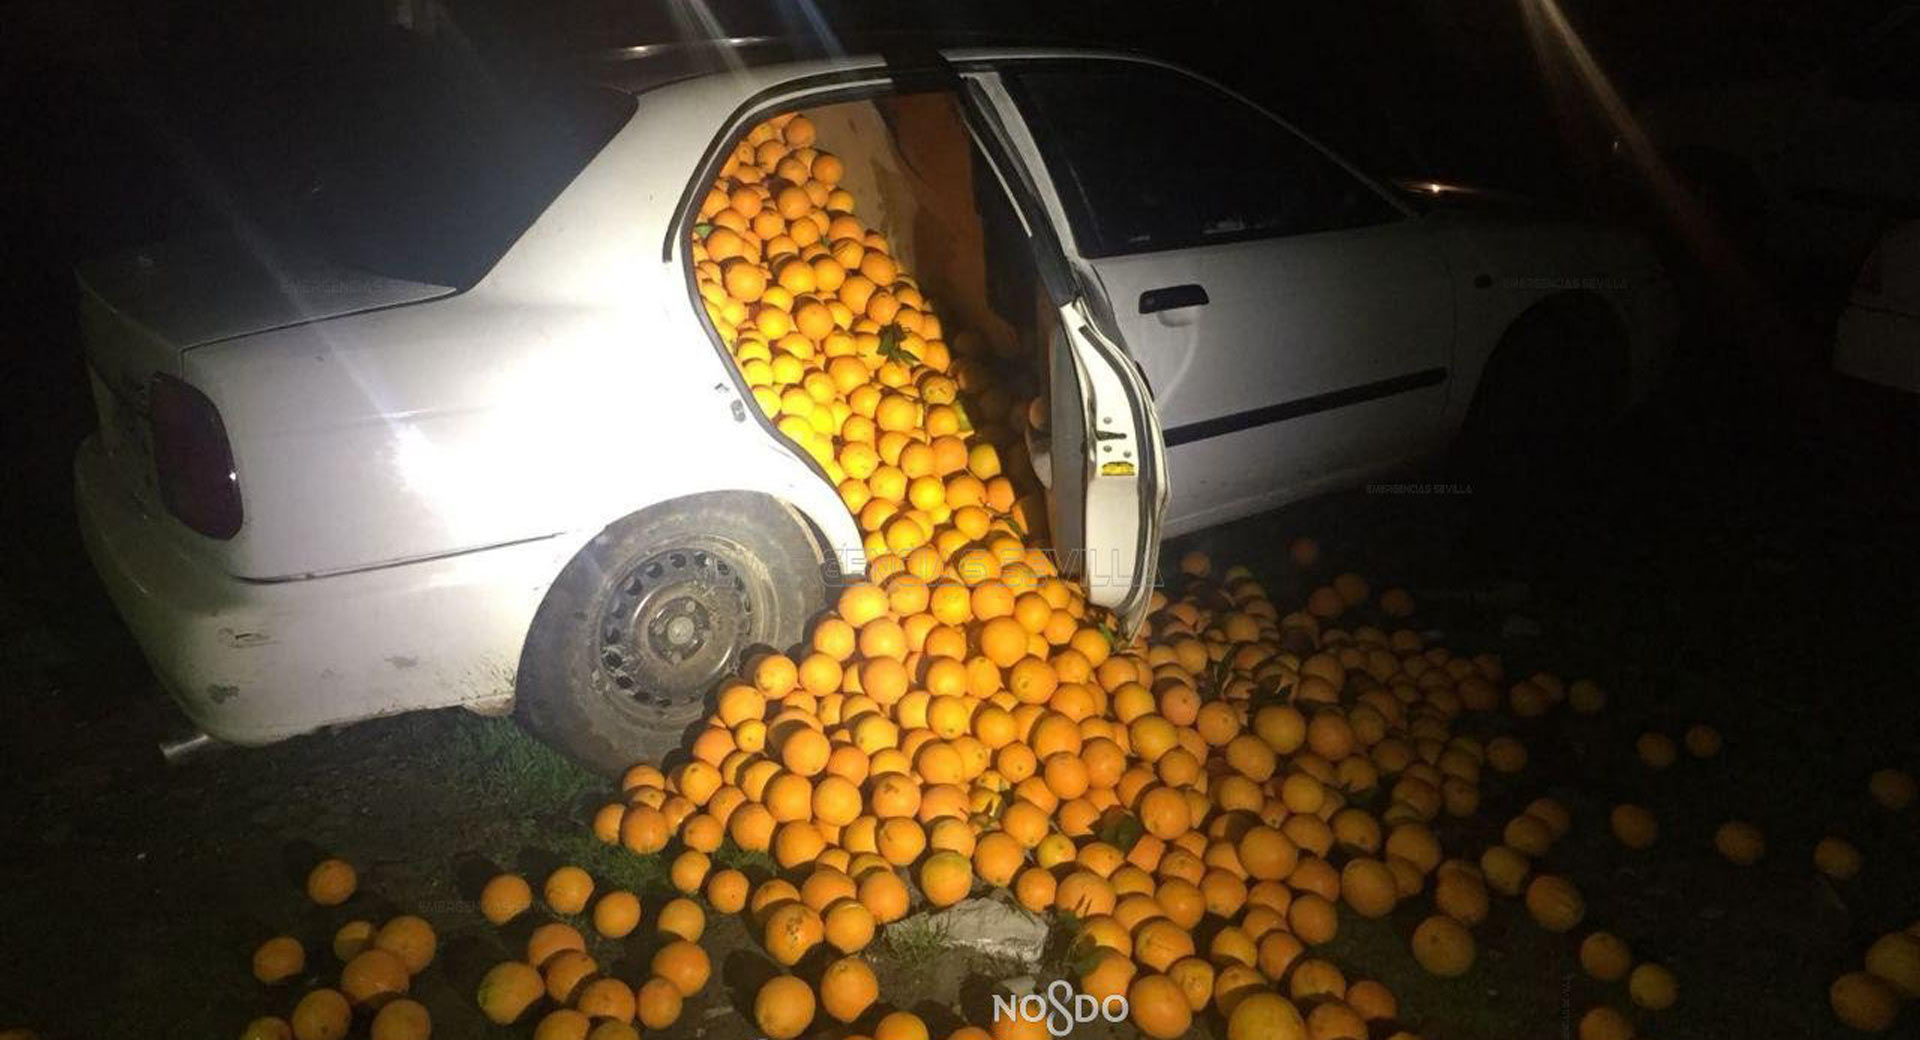 “بالصور” الشرطة تستوقف سيارتان محشوتان 4 طن برتقال مسروق